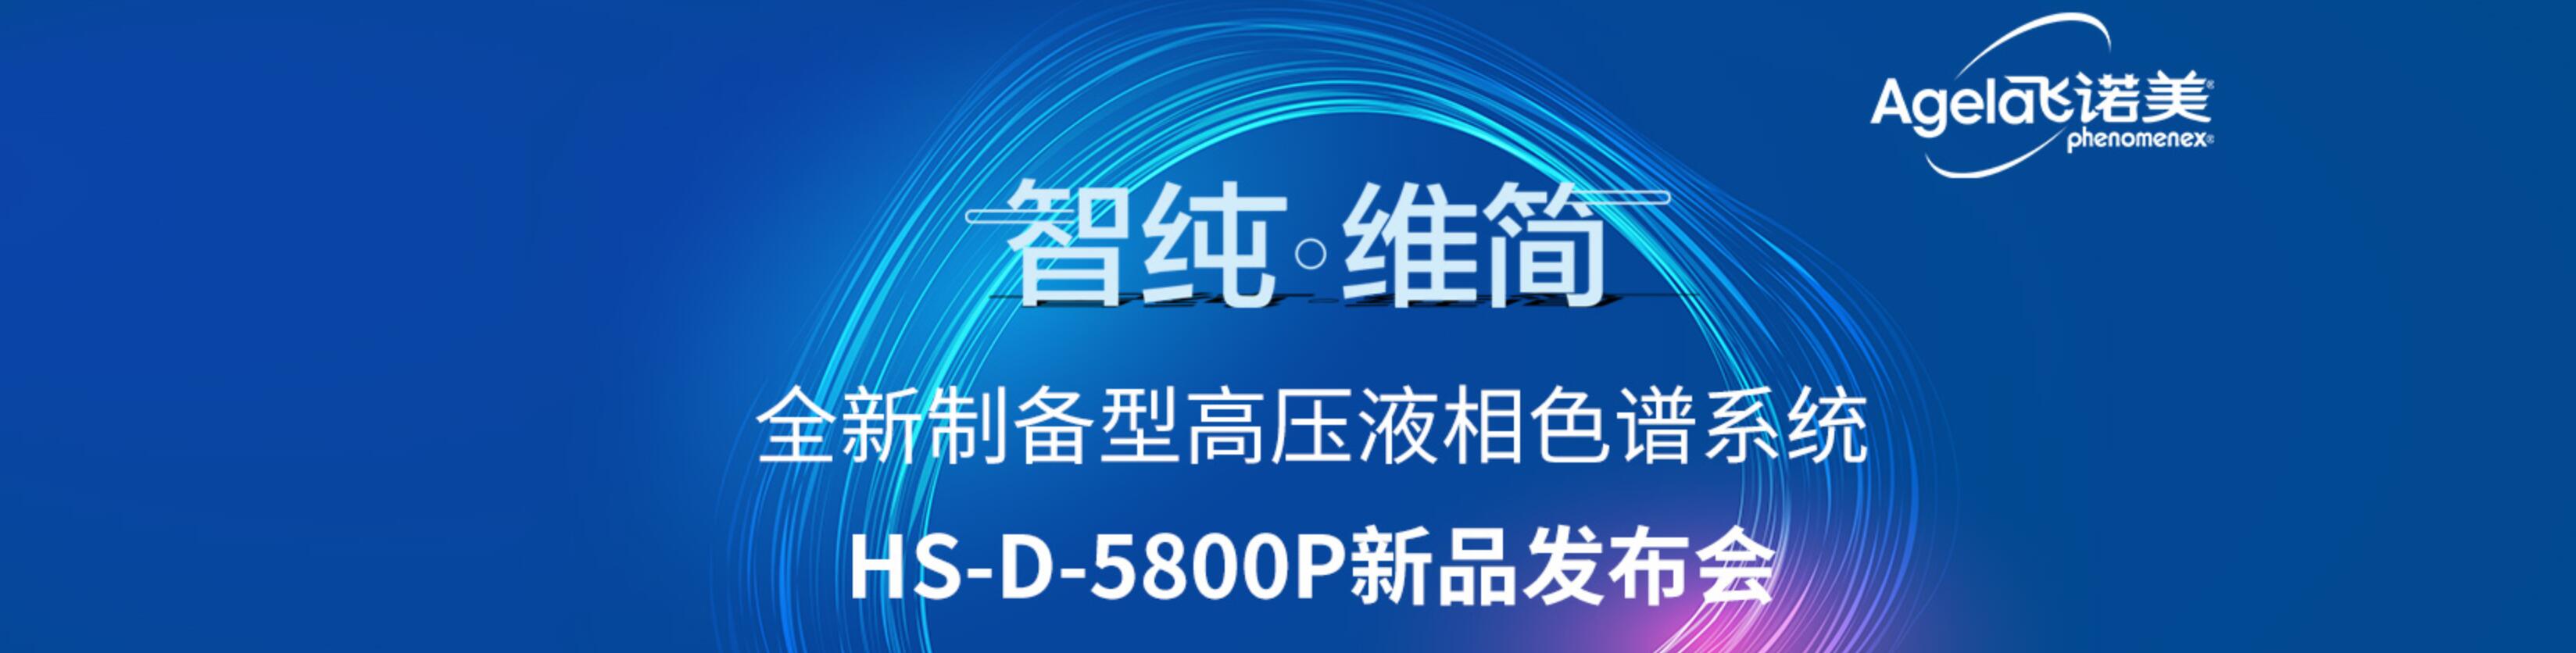 智纯·维简——全新制备型高压液相色谱系统HS-D-5800P新品发布会